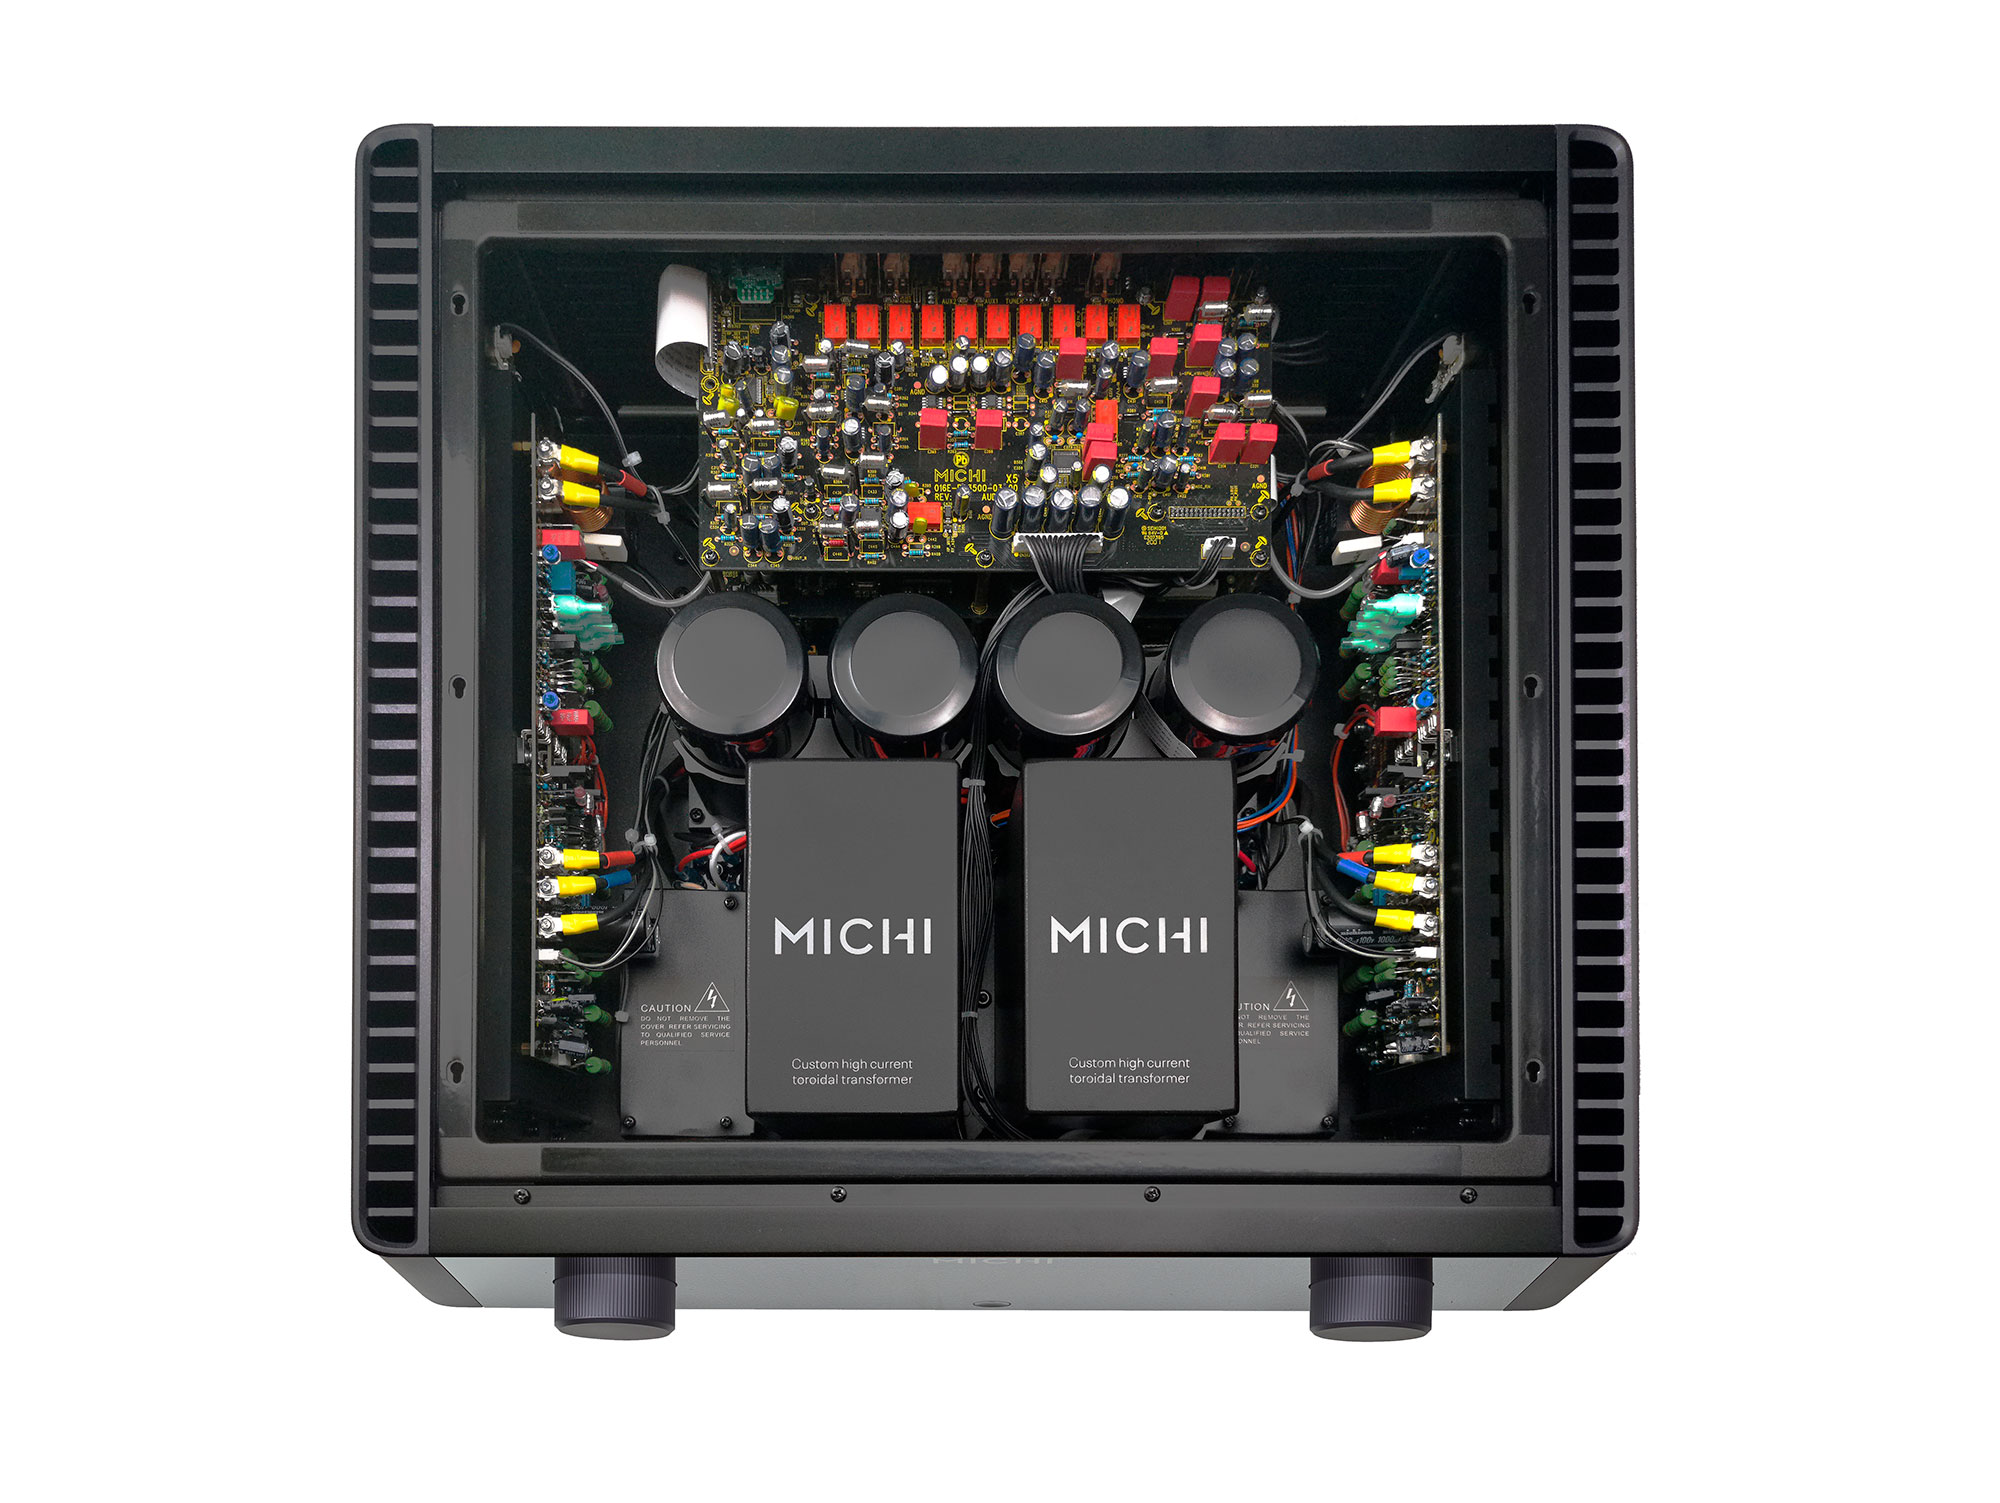 MICHI X5 (Black)
(Demo) สินค้าตัวโชว์ราคาพิเศษ